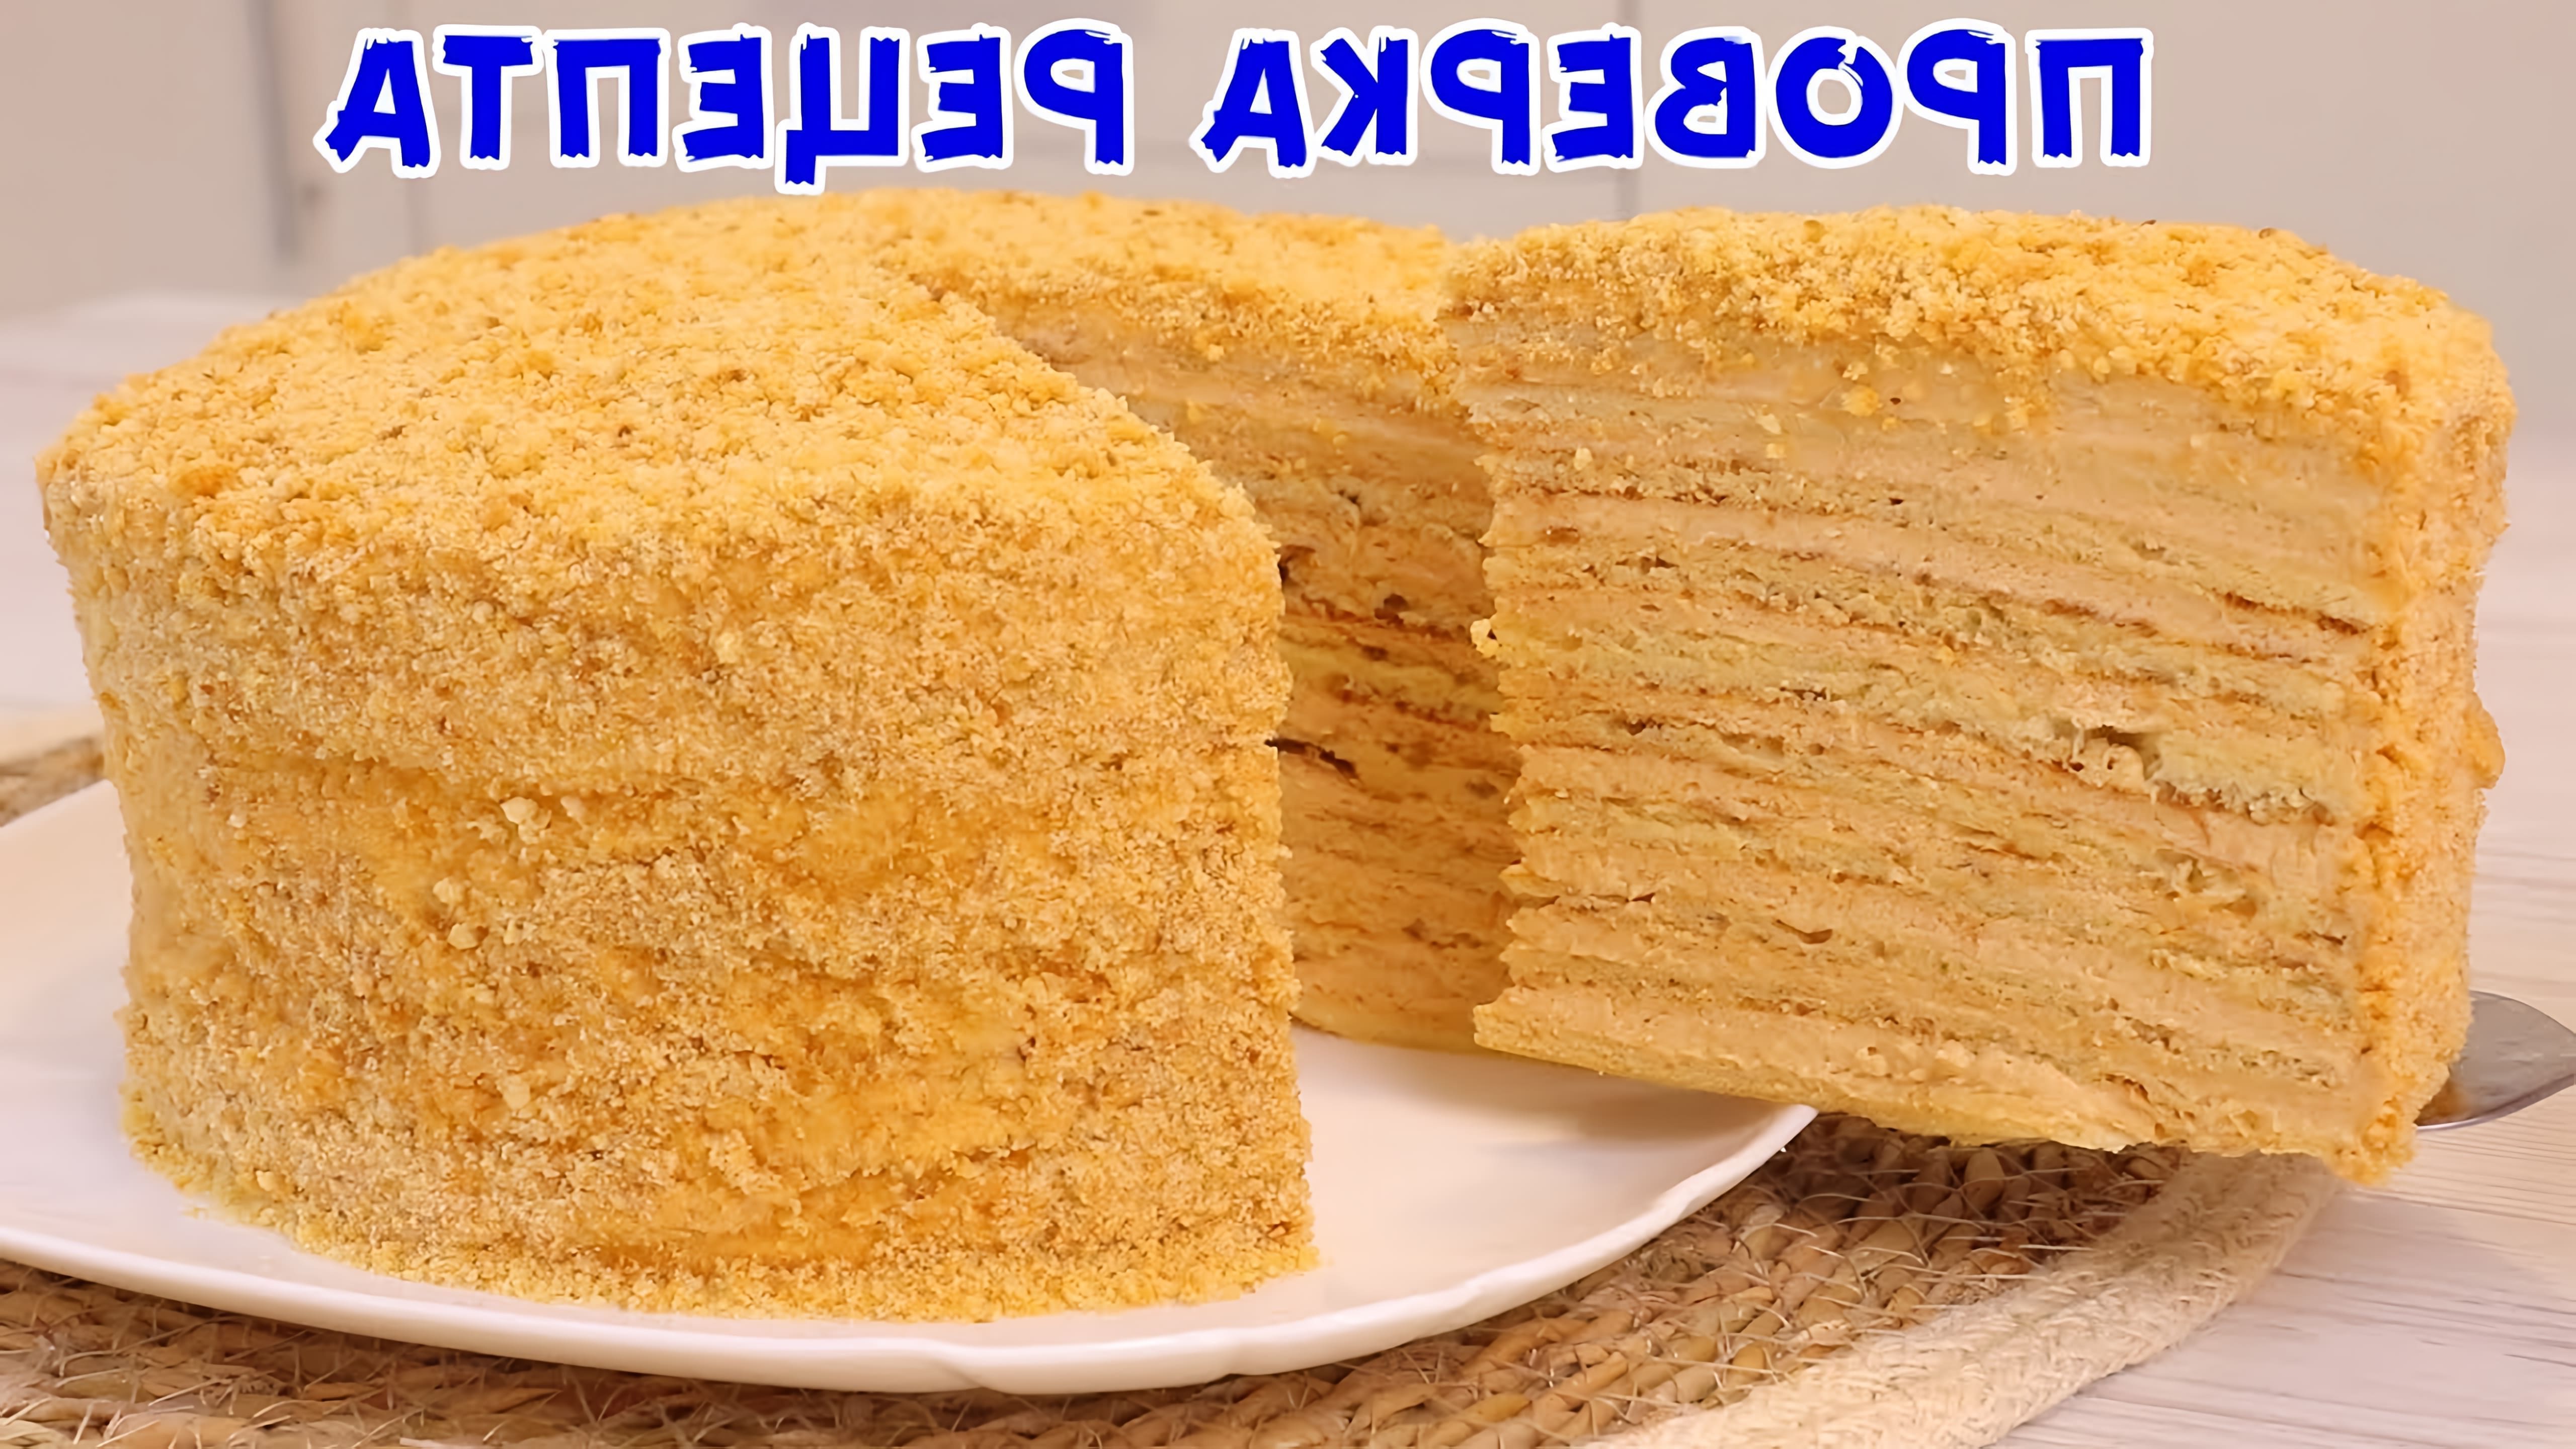 В этом видео представлен рецепт приготовления торта "Медовик" на сковороде